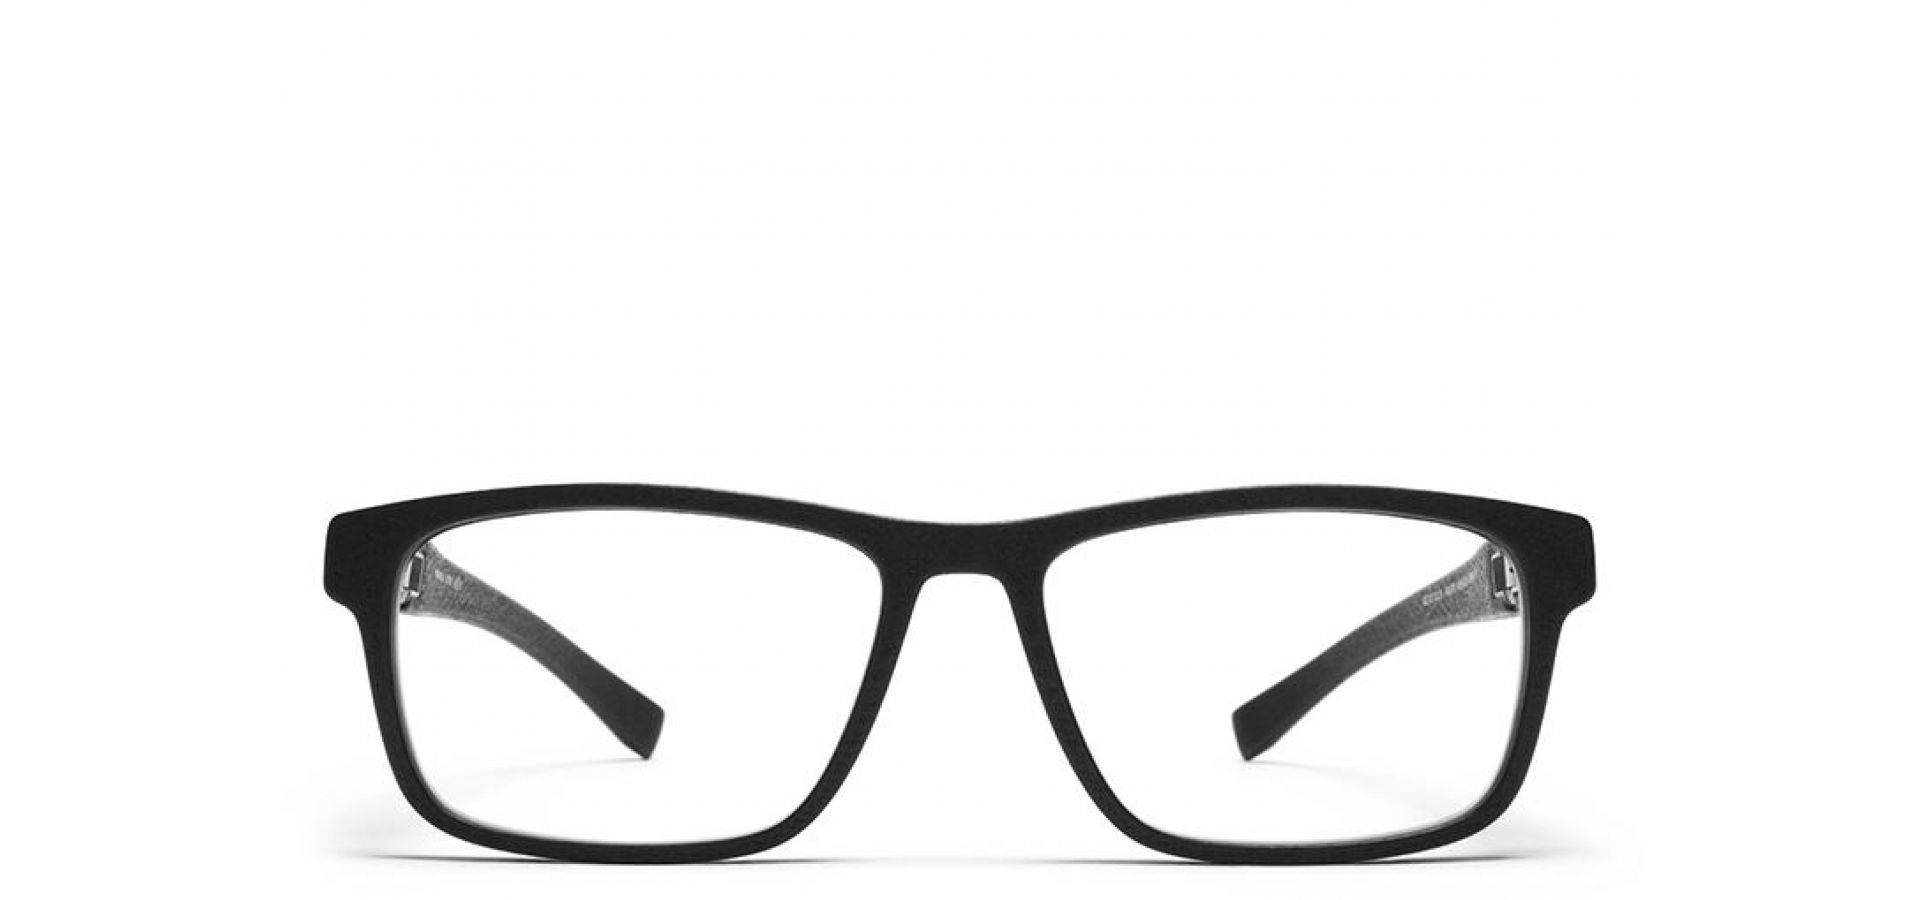 Korekcijska očala Mykita MYKITA JUPITER MD-1 PITCH BLACK: Velikost: 52/18/130, Spol: unisex, Material: acetat